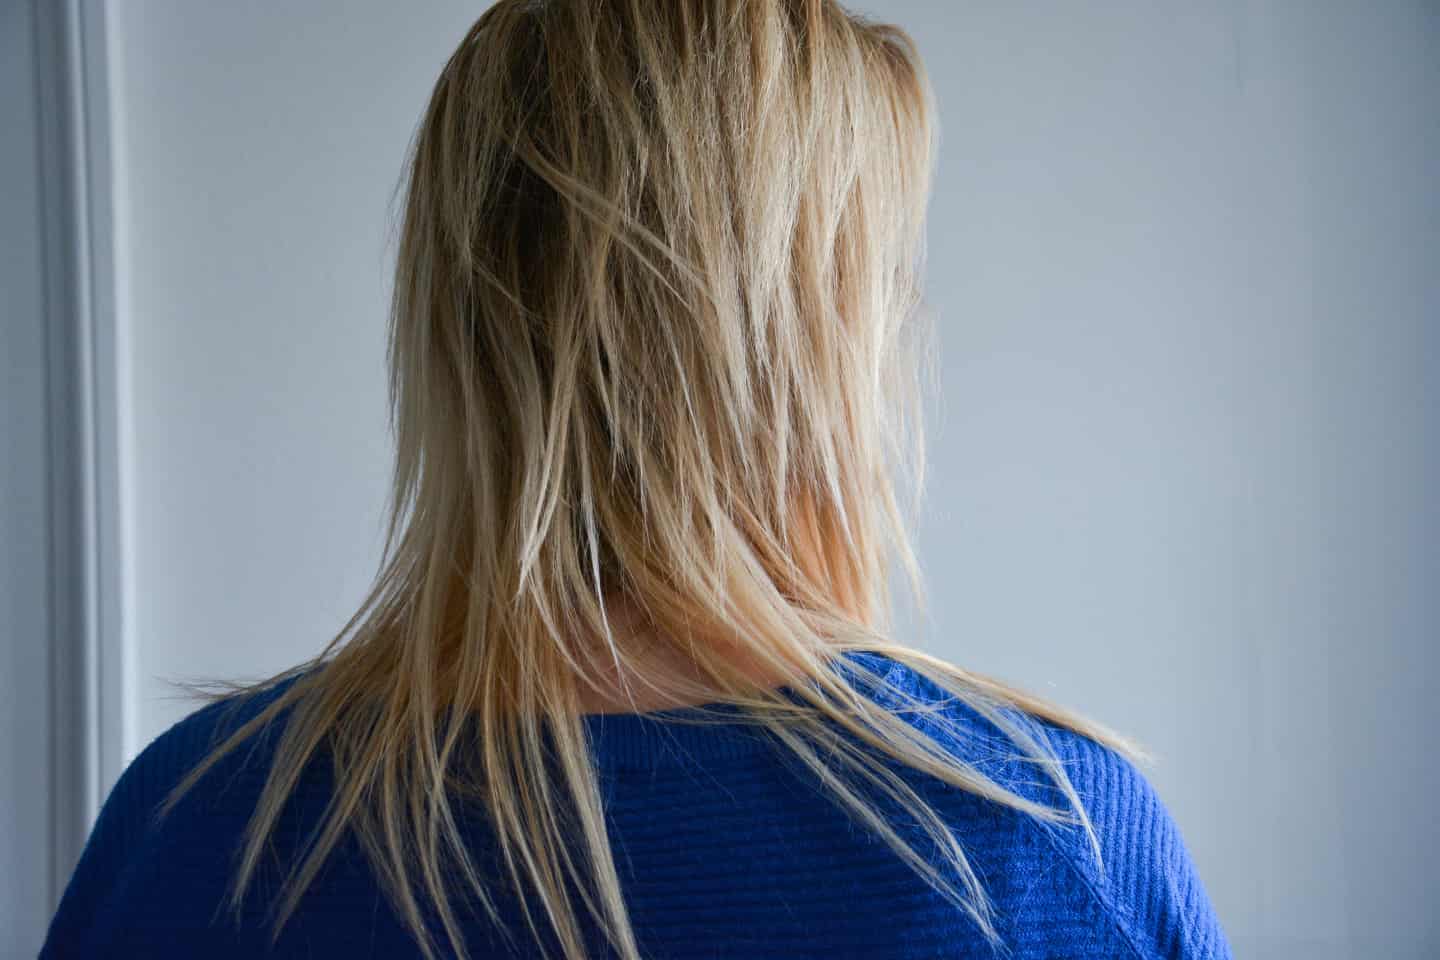 Metafor ubetalt Oswald Købte hårprodukt hos frisøren: Christinas hår er ødelagt, men ingen vil  tage ansvaret | stiften.dk